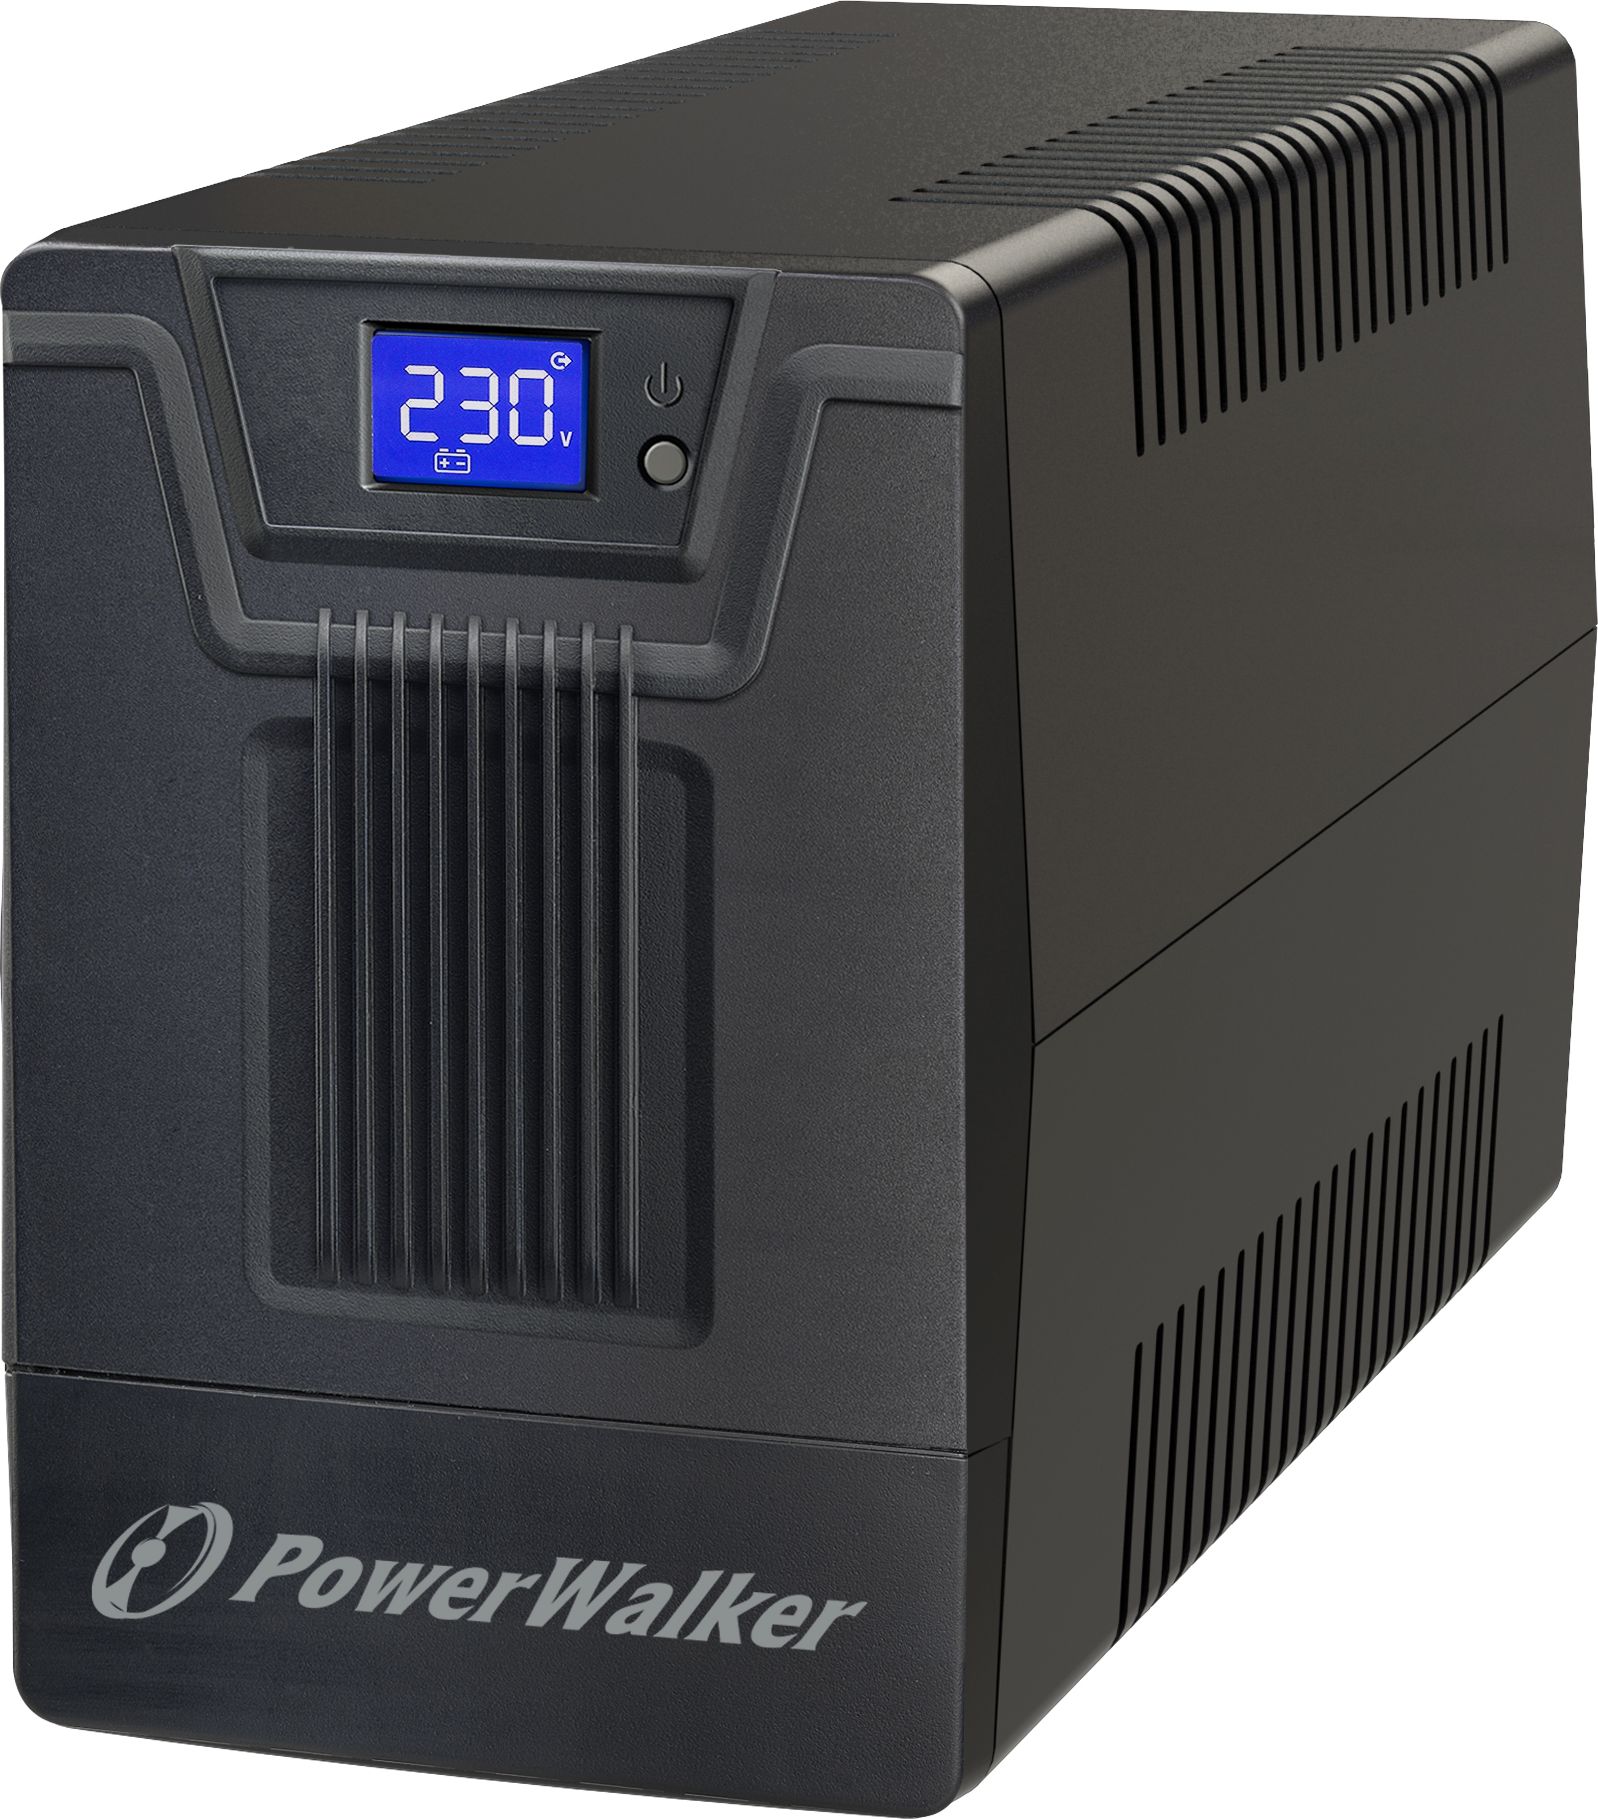 UPS PowerWalker VI 1000 SCL FR (10121148) UPS PowerWalker VI 1000 SCL FR (10121148) este un UPS (Sistem de alimentare neintreruptibil) fabricat de PowerWalker, proiectat pentru a furniza energie electrica pentru dispozitivele conectate in caz de int